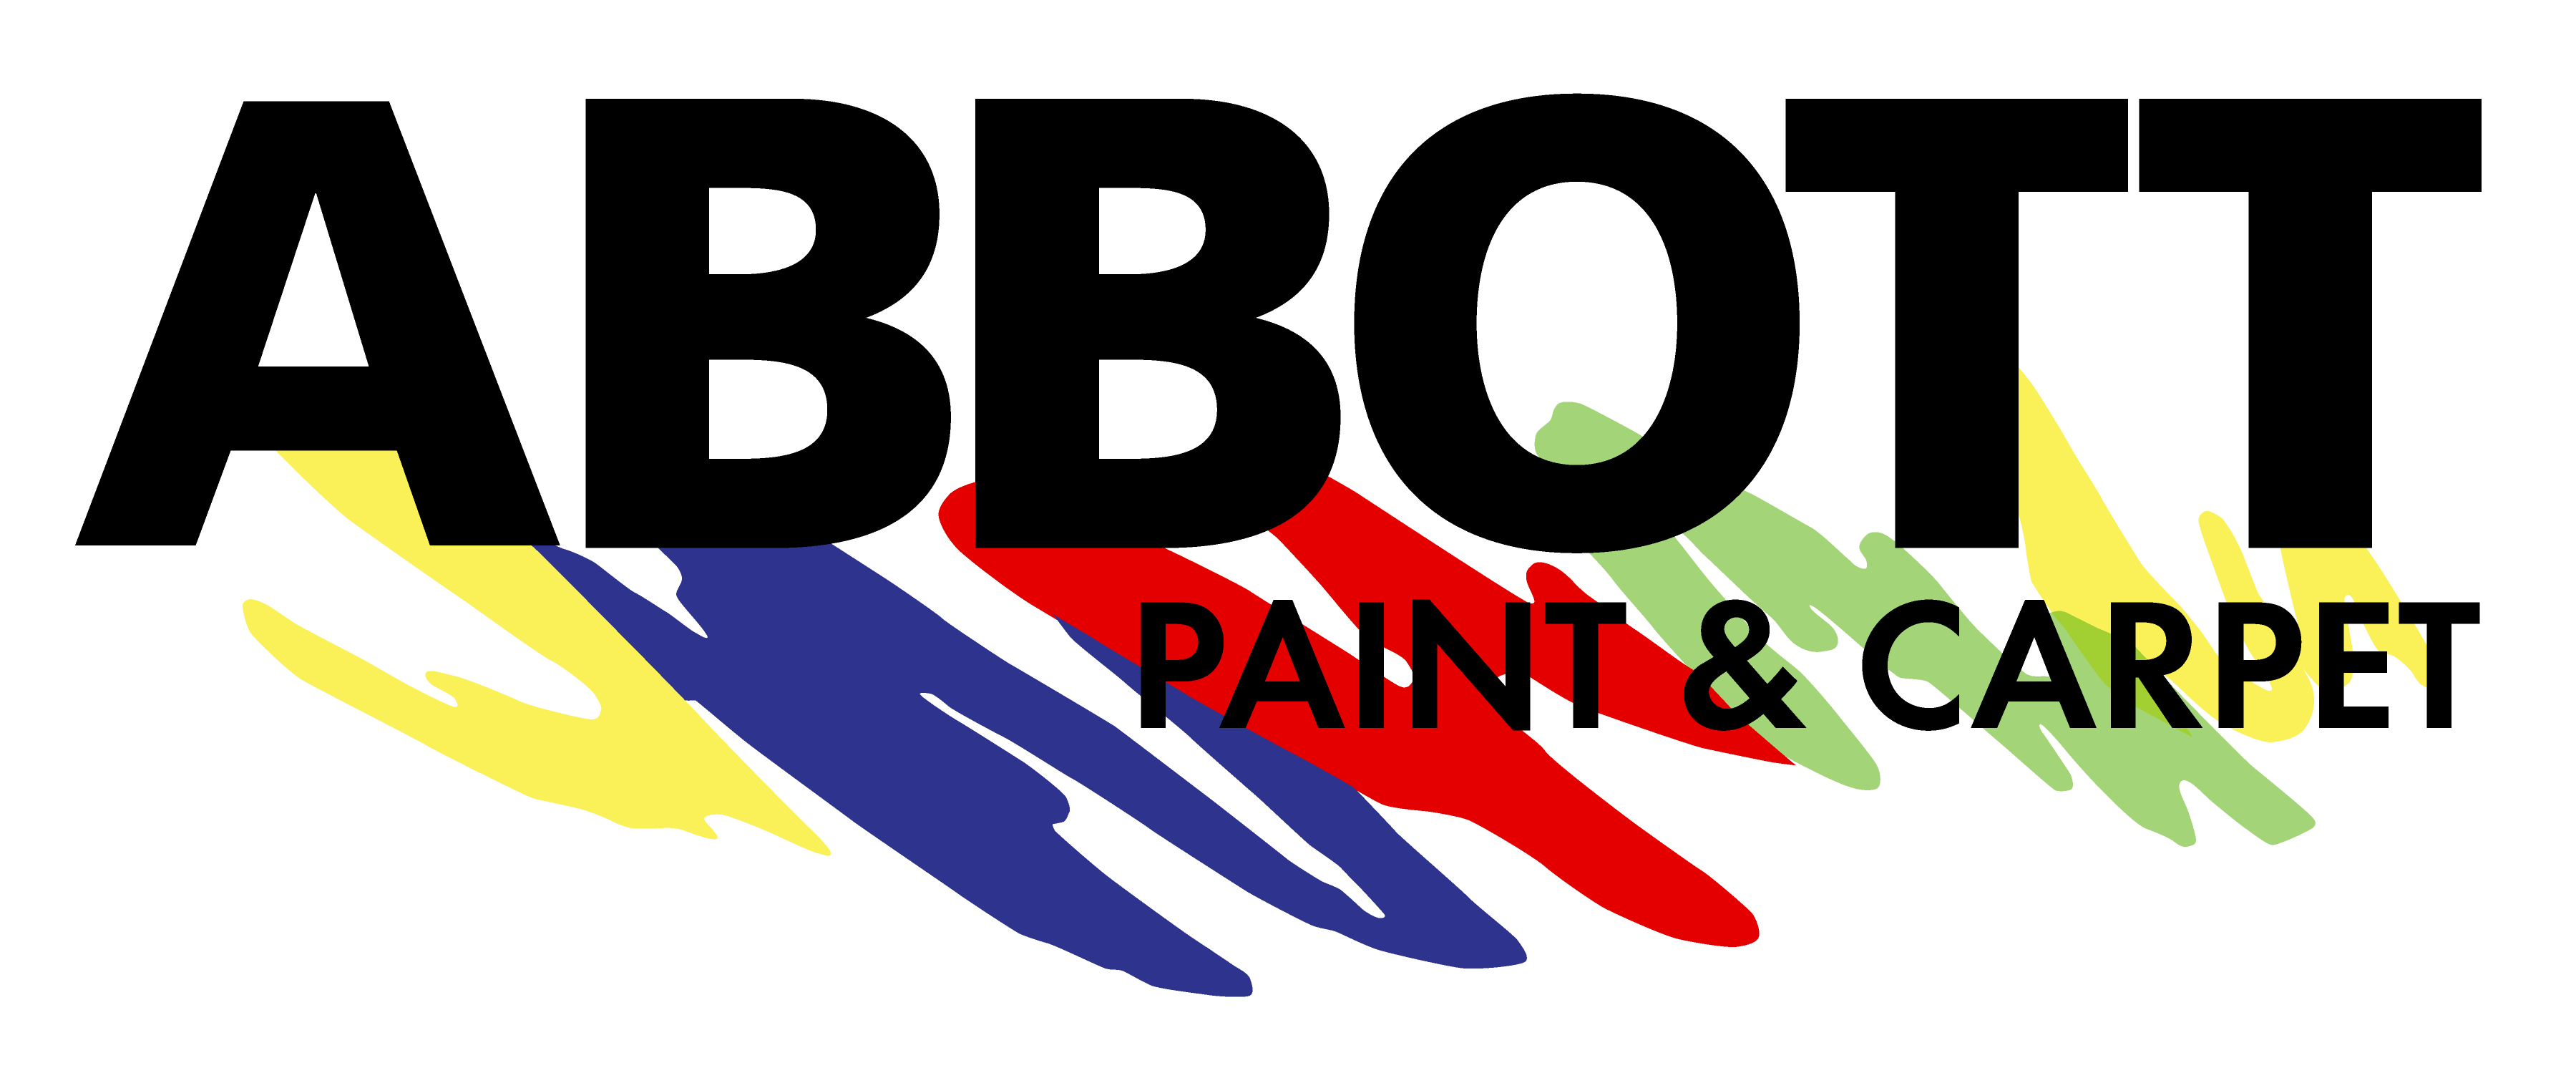 Paint Sales Rep